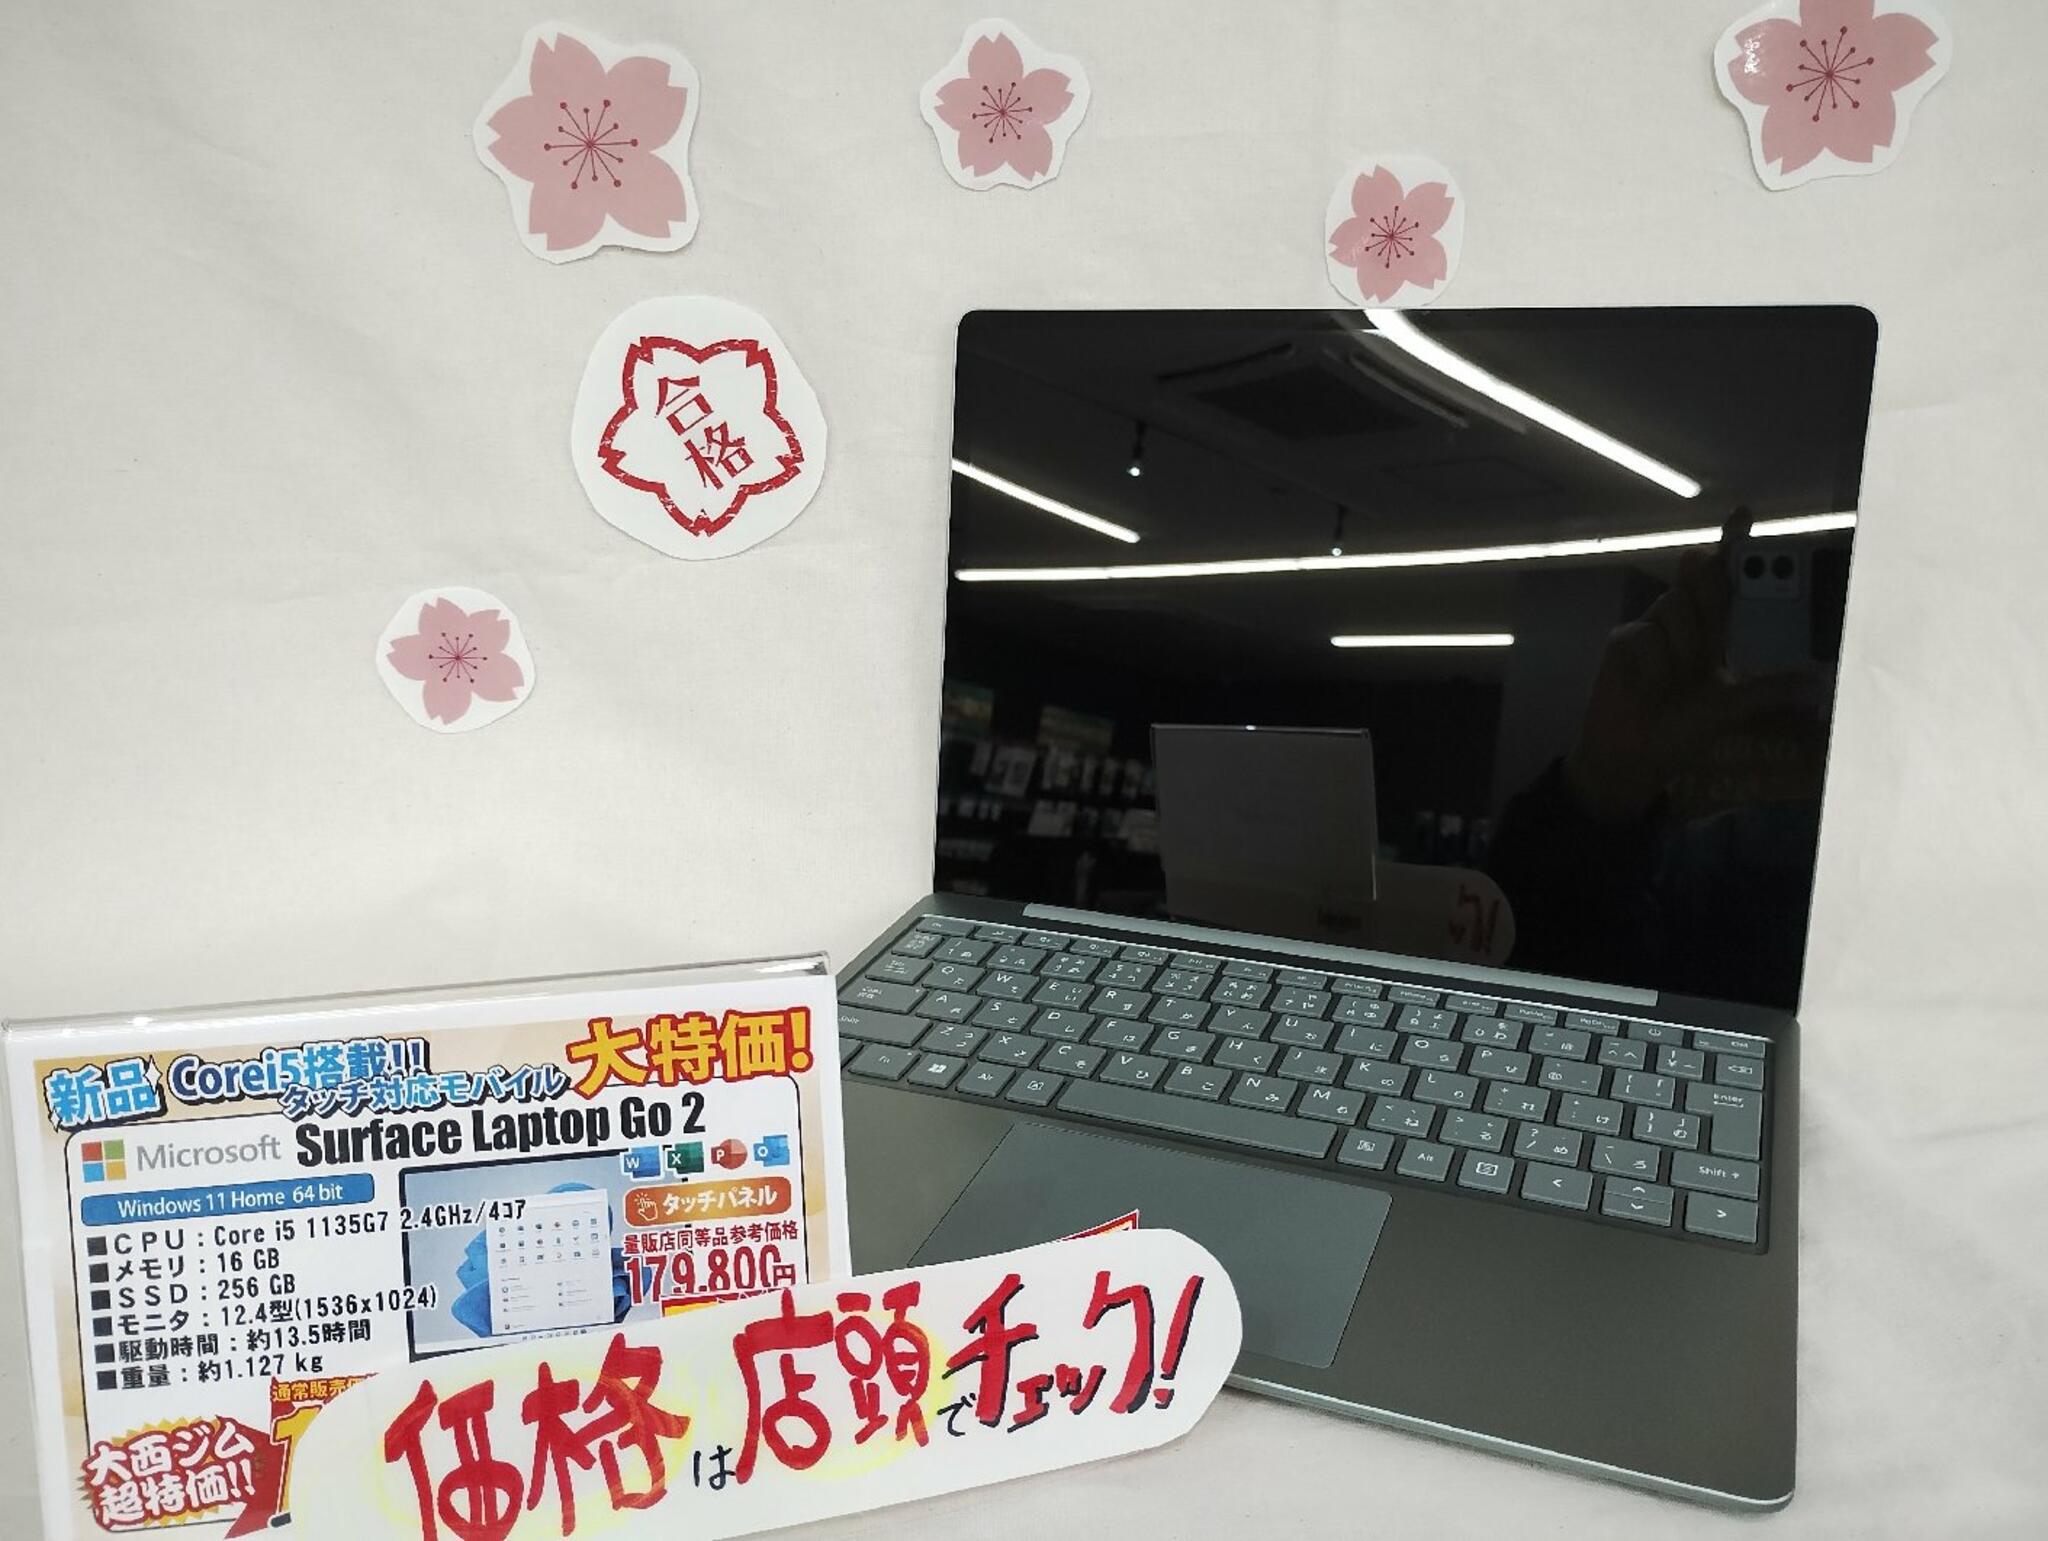 パソコン専門店 大西ジム 新長田店からのお知らせ(学校推奨パソコンのイチオシ商品「Surface Laptop Go」セージカラー！)に関する写真